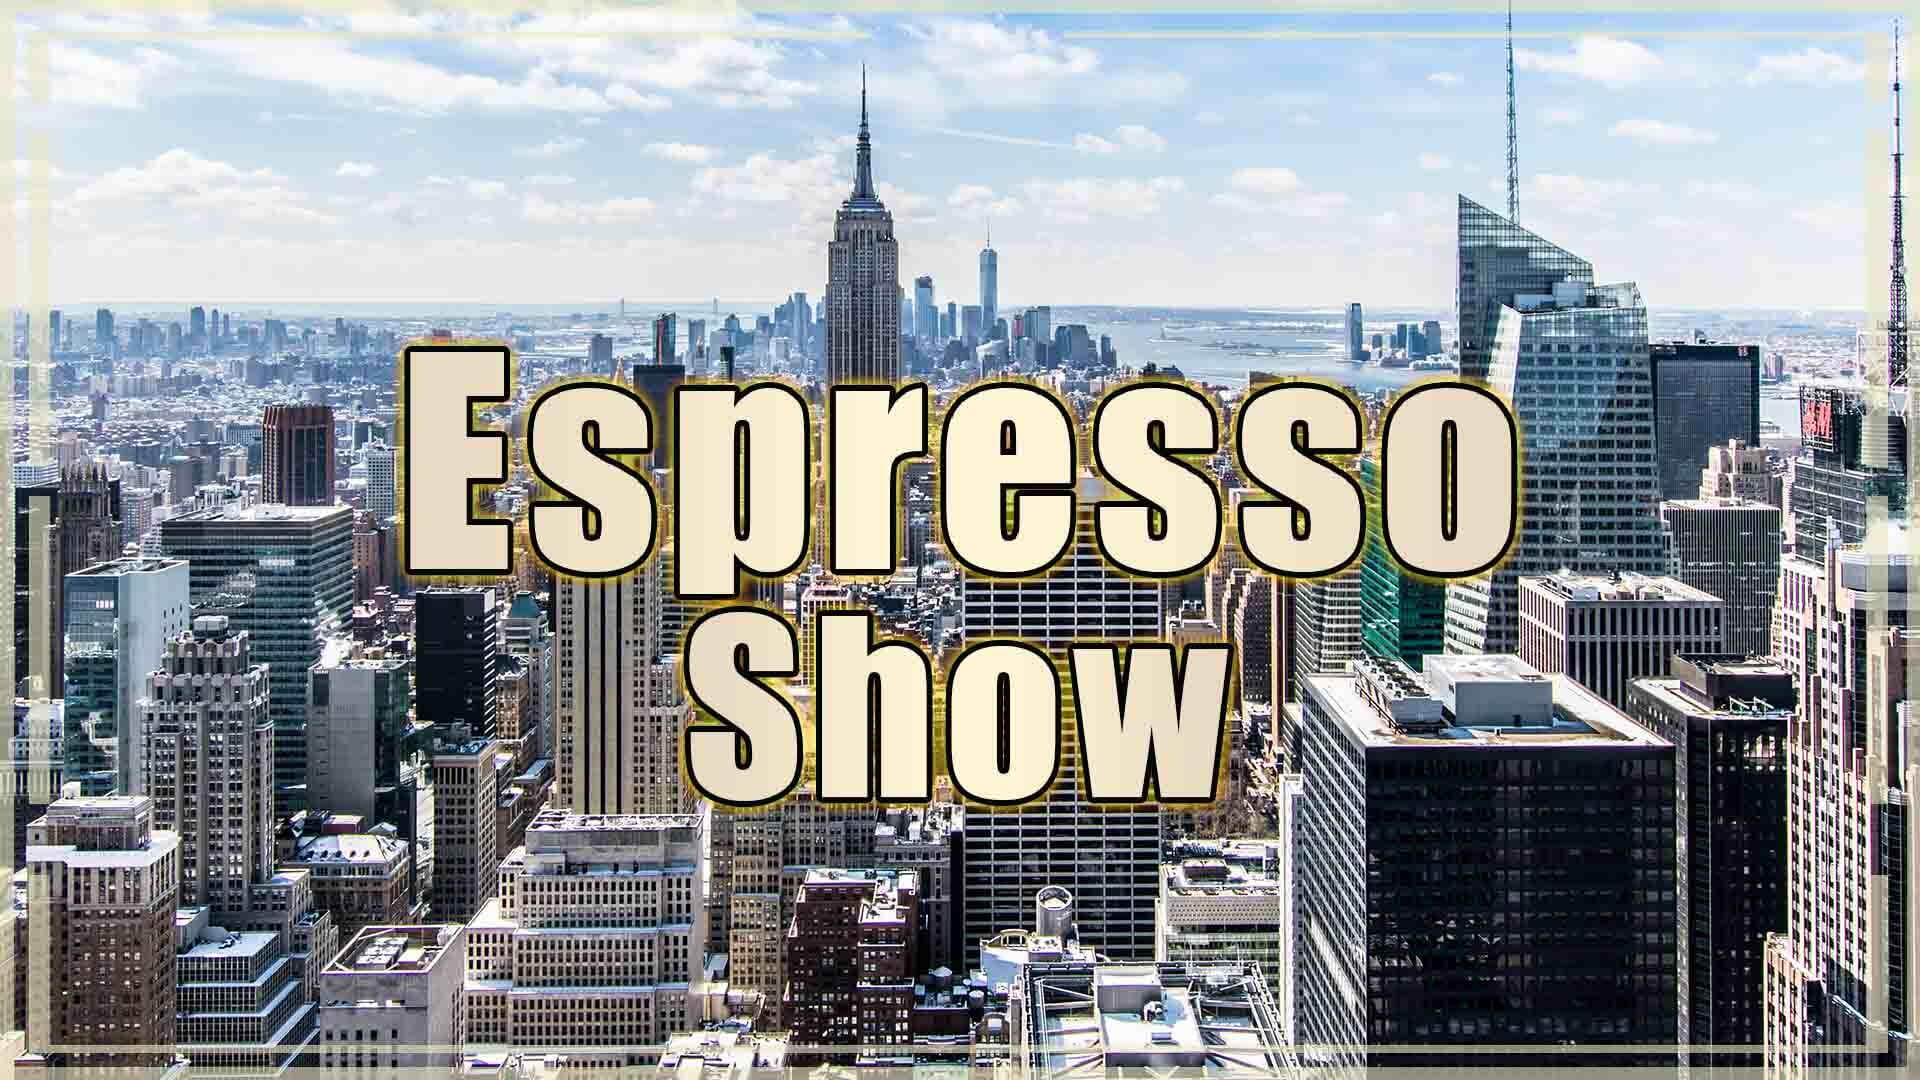 Espresso Show 2-6-18 Jak przewidzieć pogodę? O co chodzi w Pepper Challenge? Dubai - YES or NO